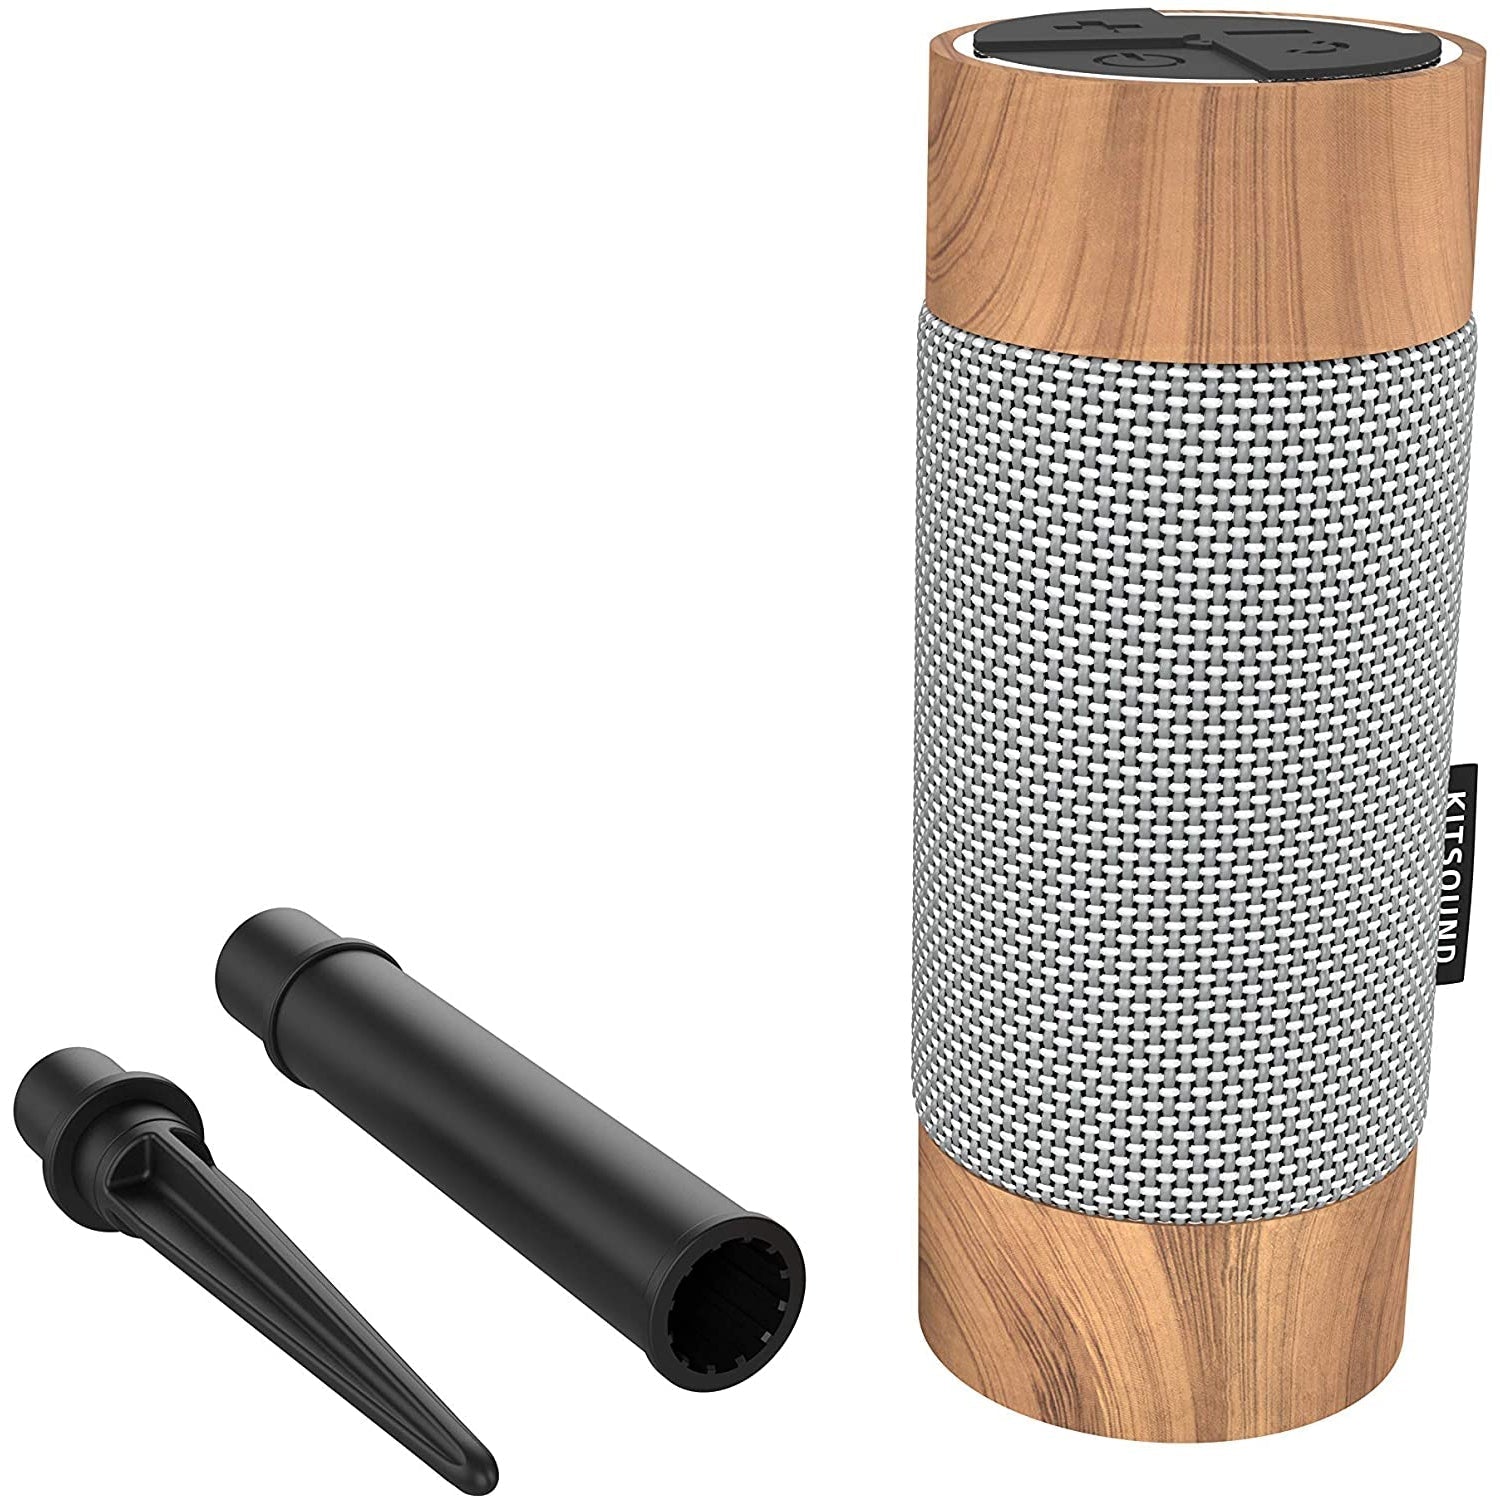 KitSound Diggit Outdoor Bluetooth Garden Speaker. Silver/Wood - Refurbished Good